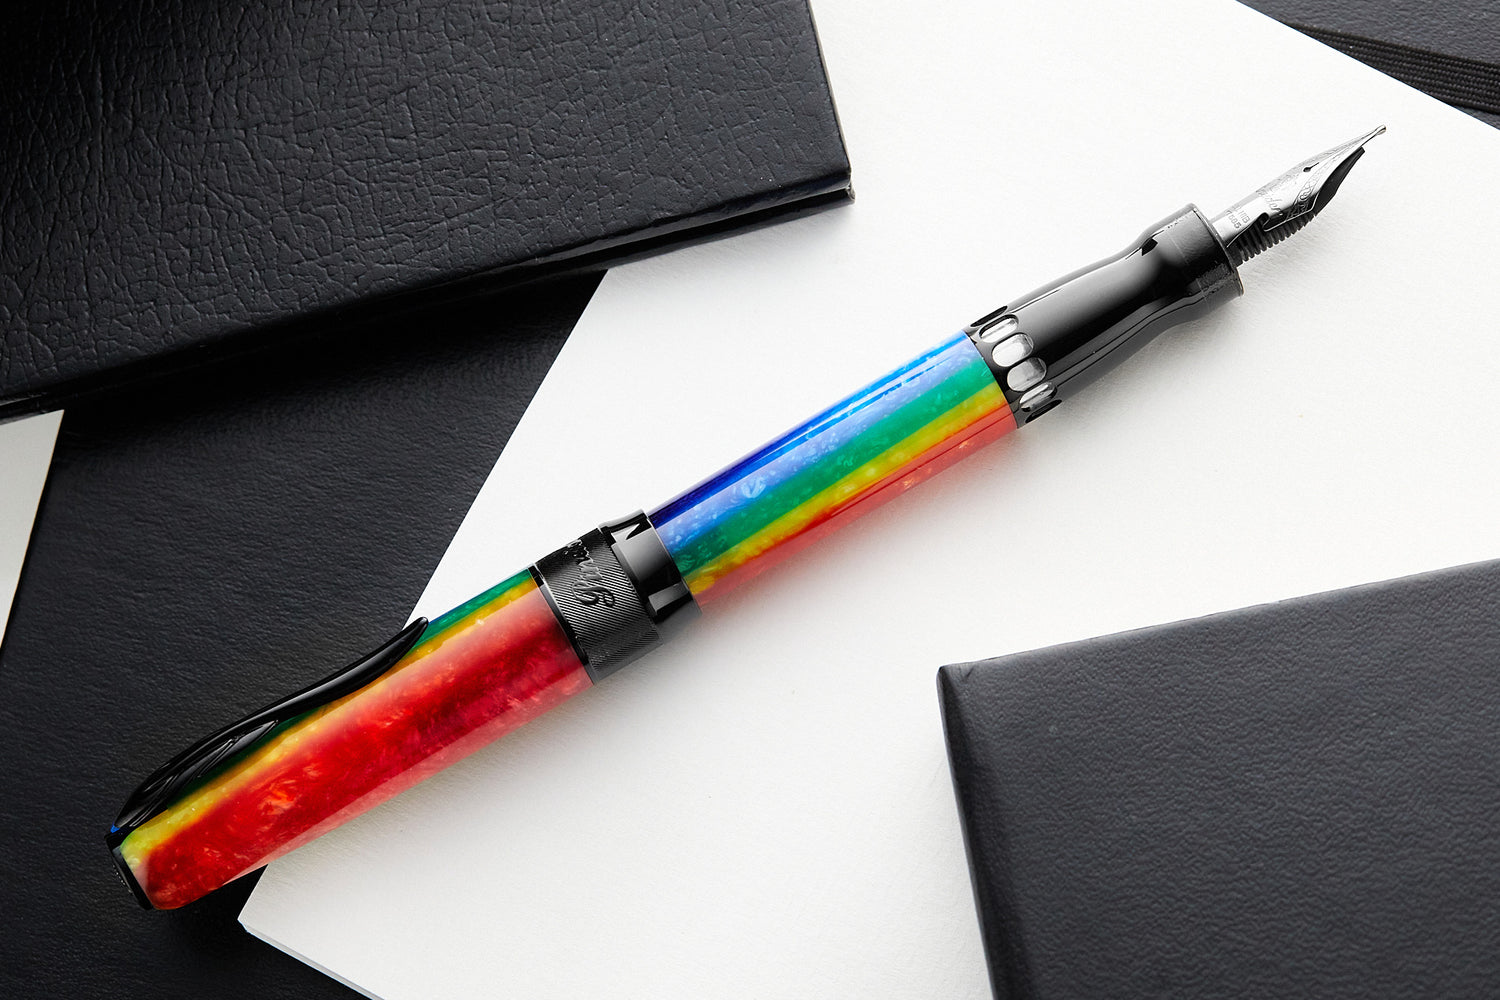 Rainbow Fountain Pens